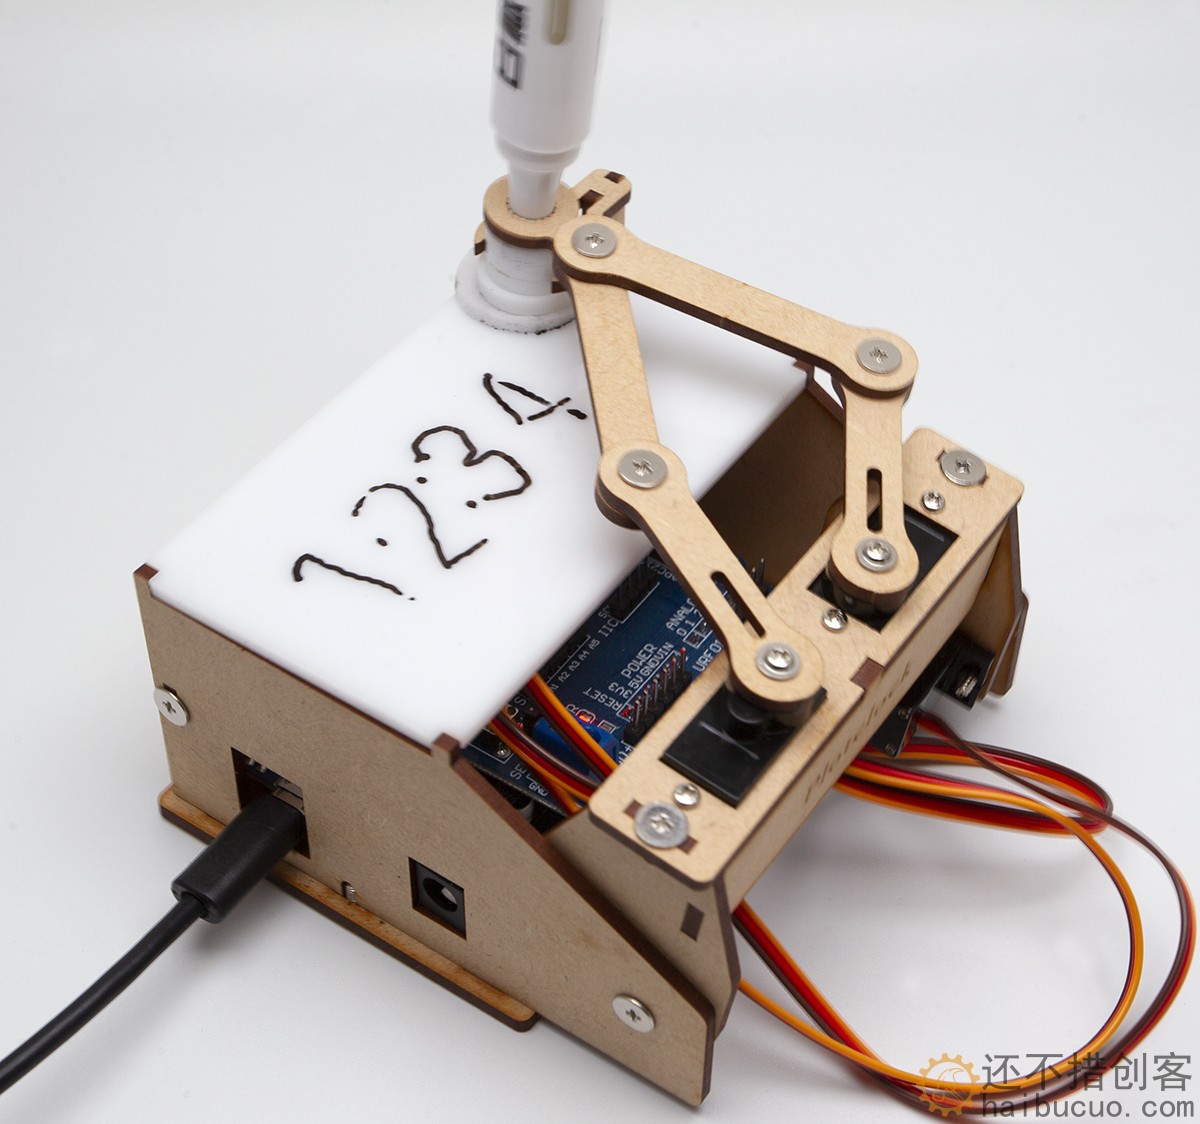 Plotclock小贱钟机械手开源写字绘图DIY机器人创客适合arduino用